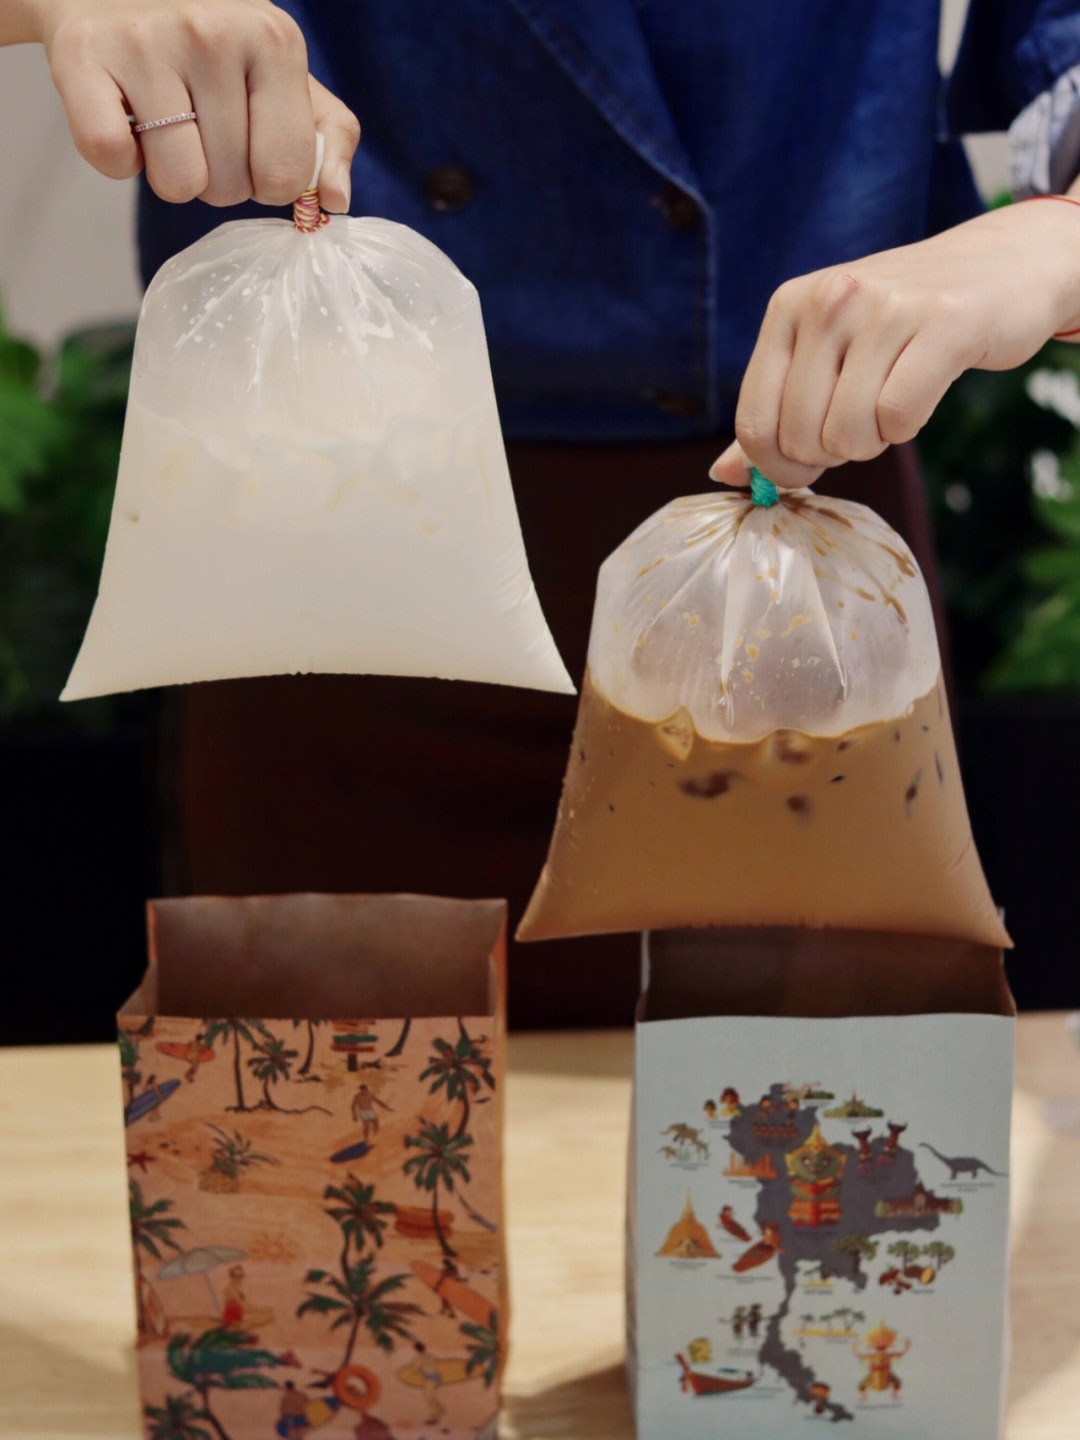 台州探店袋装的泰式奶茶来解个暑